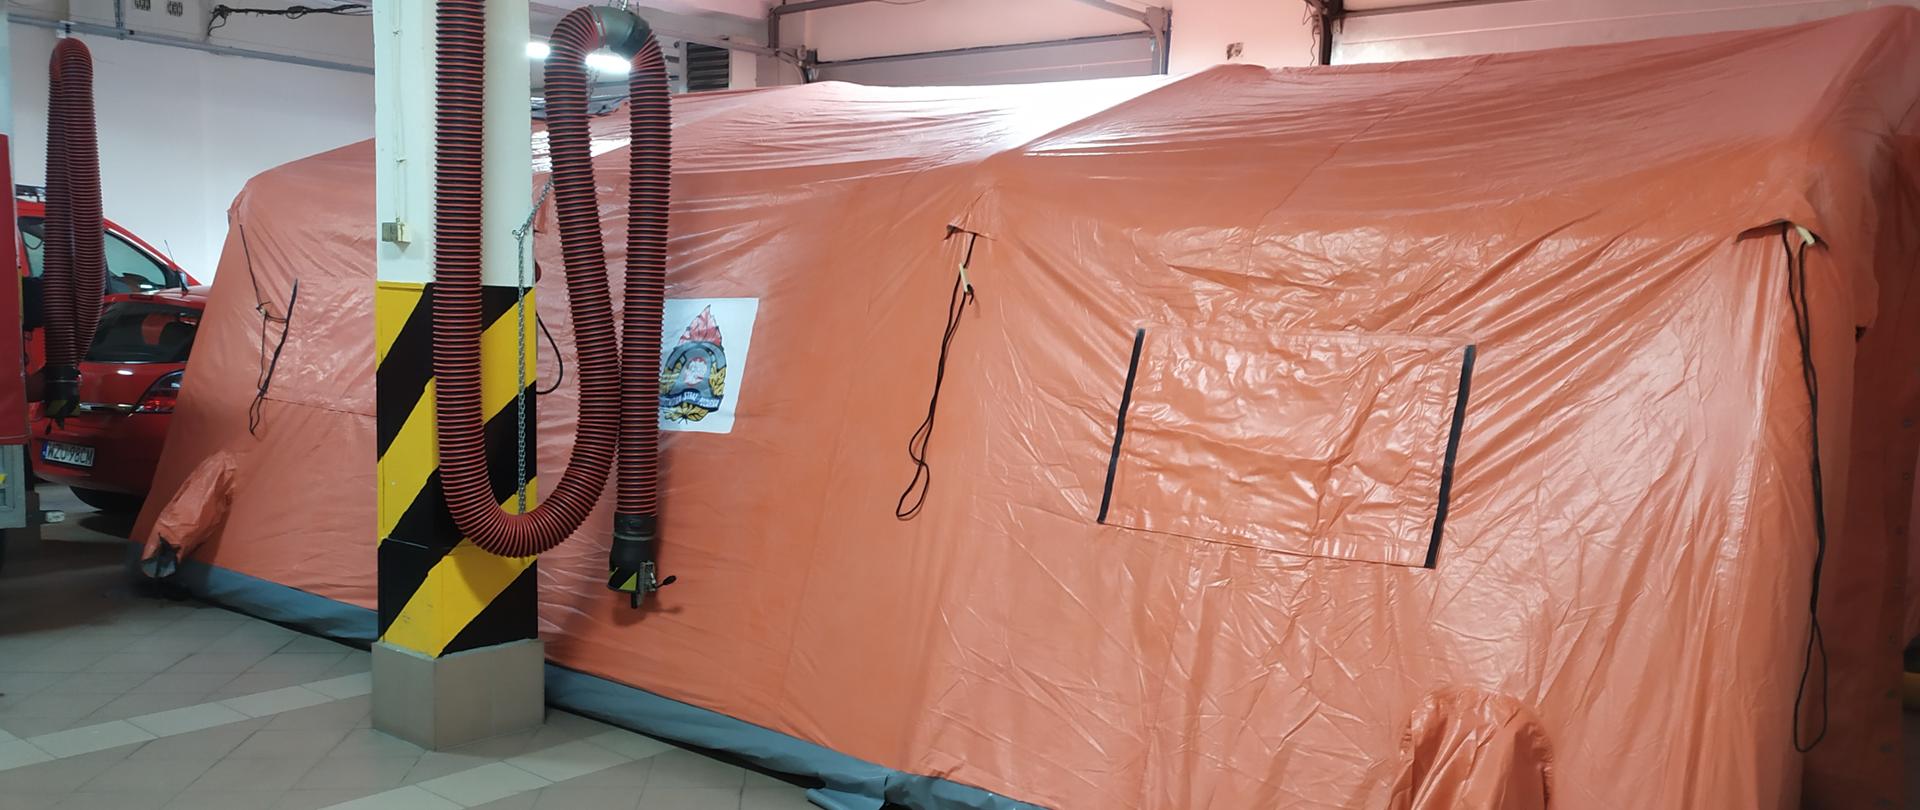 Namiot pneumatyczny pomarańczowy o siwym podłożu rozstawiony na garażu komendy.